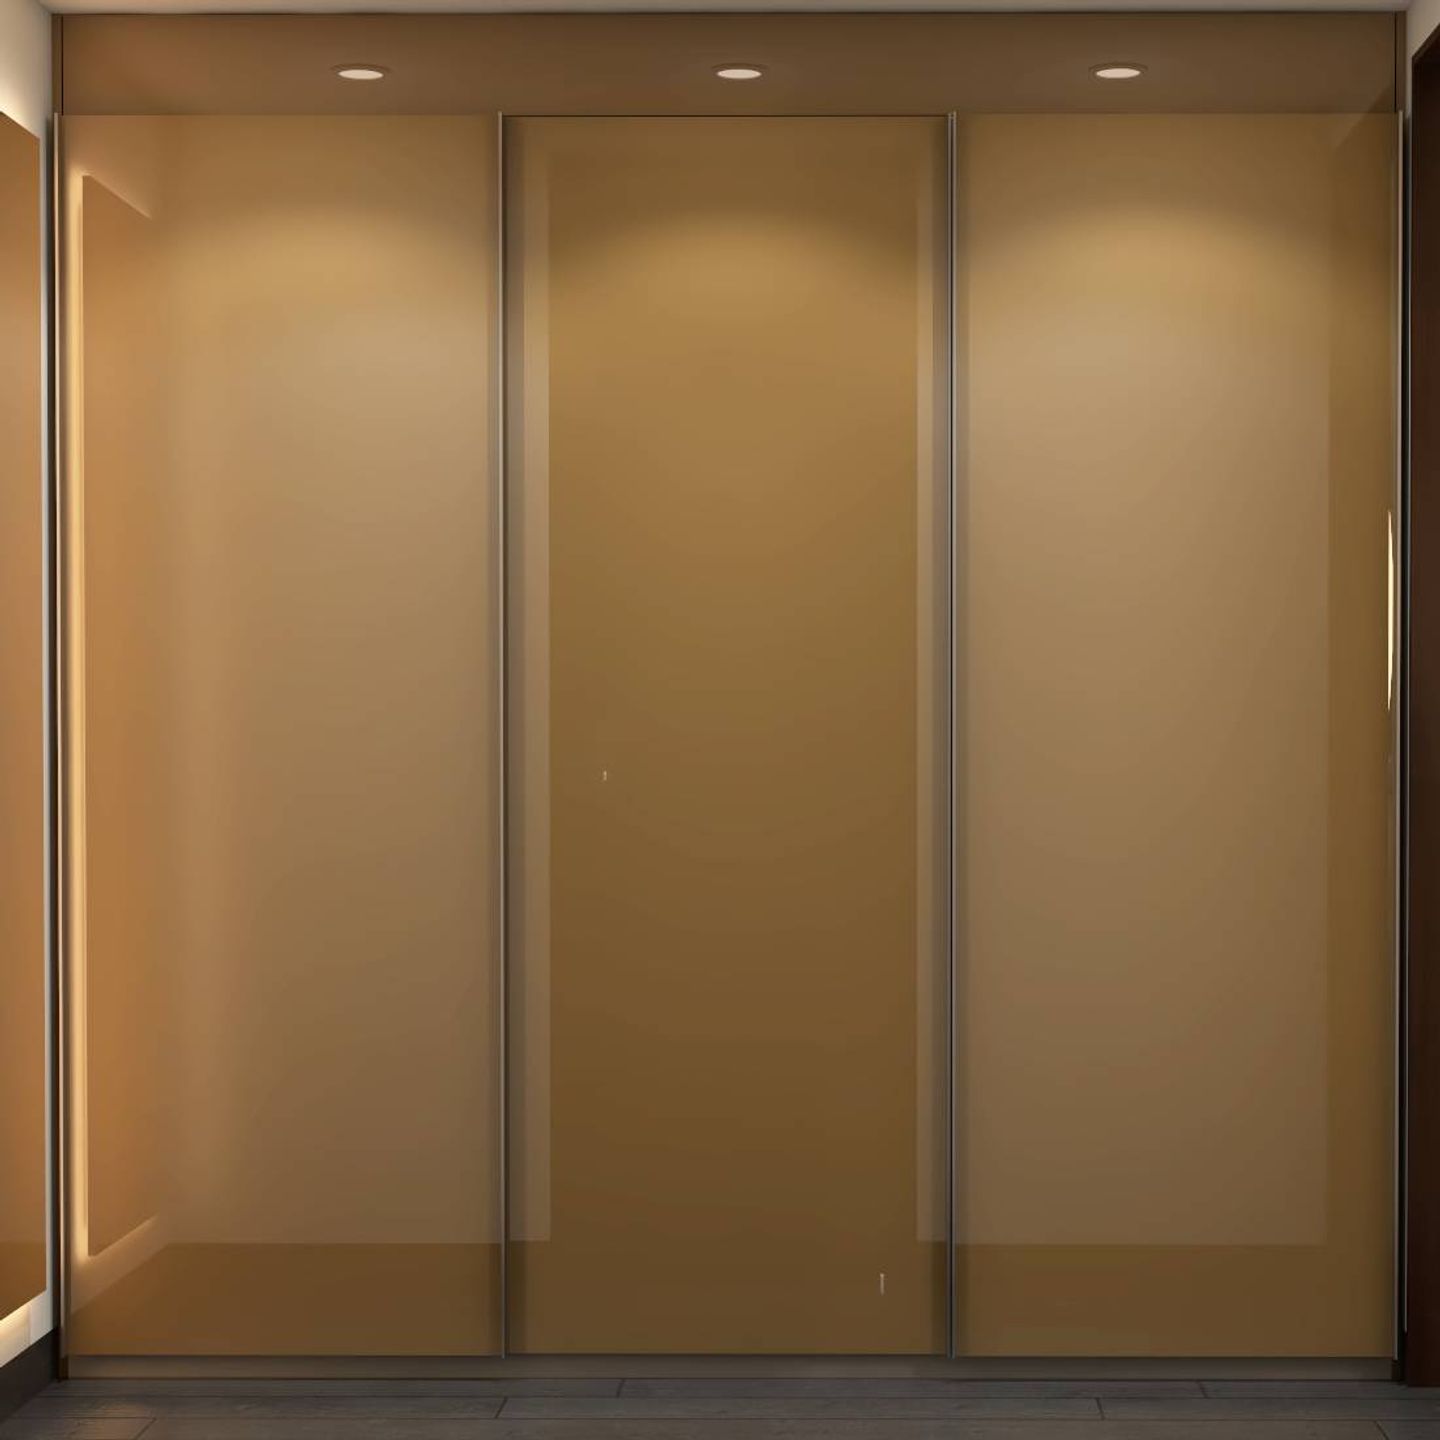 3-Door Wardrobe Design With Ambient Lighting - Livspace